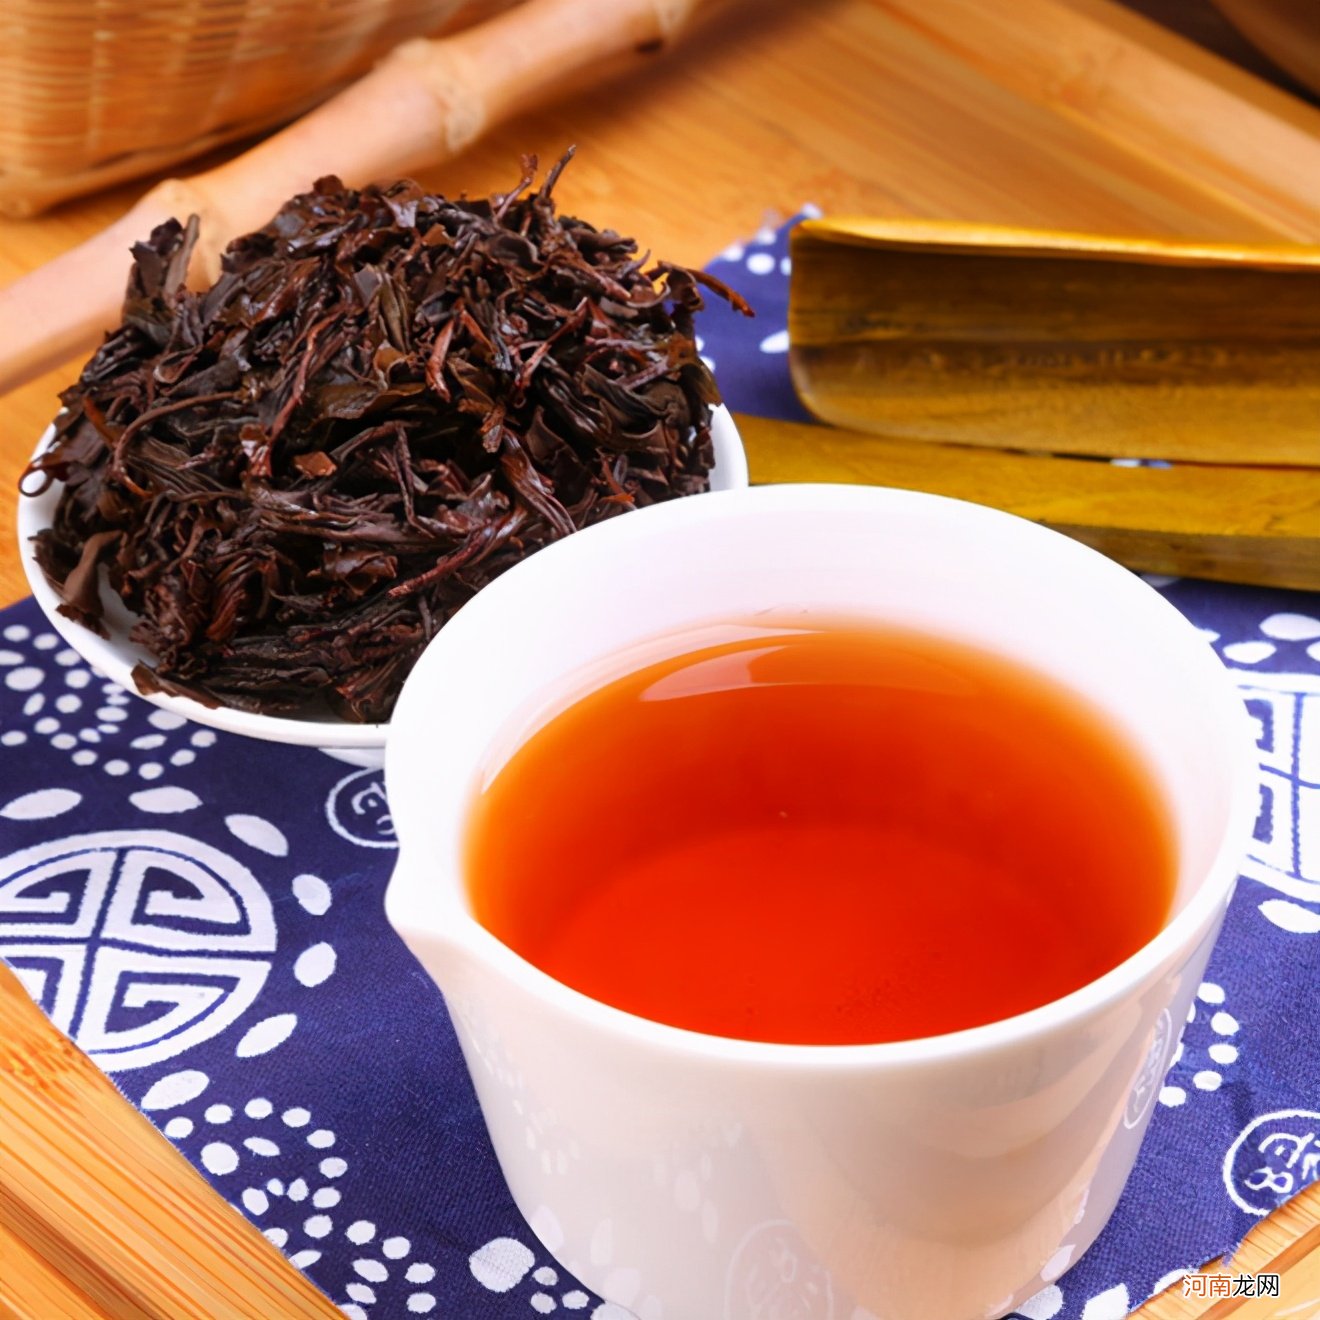 中国最贵的四种茶叶是哪种 中国最贵的茶叶多少钱一斤